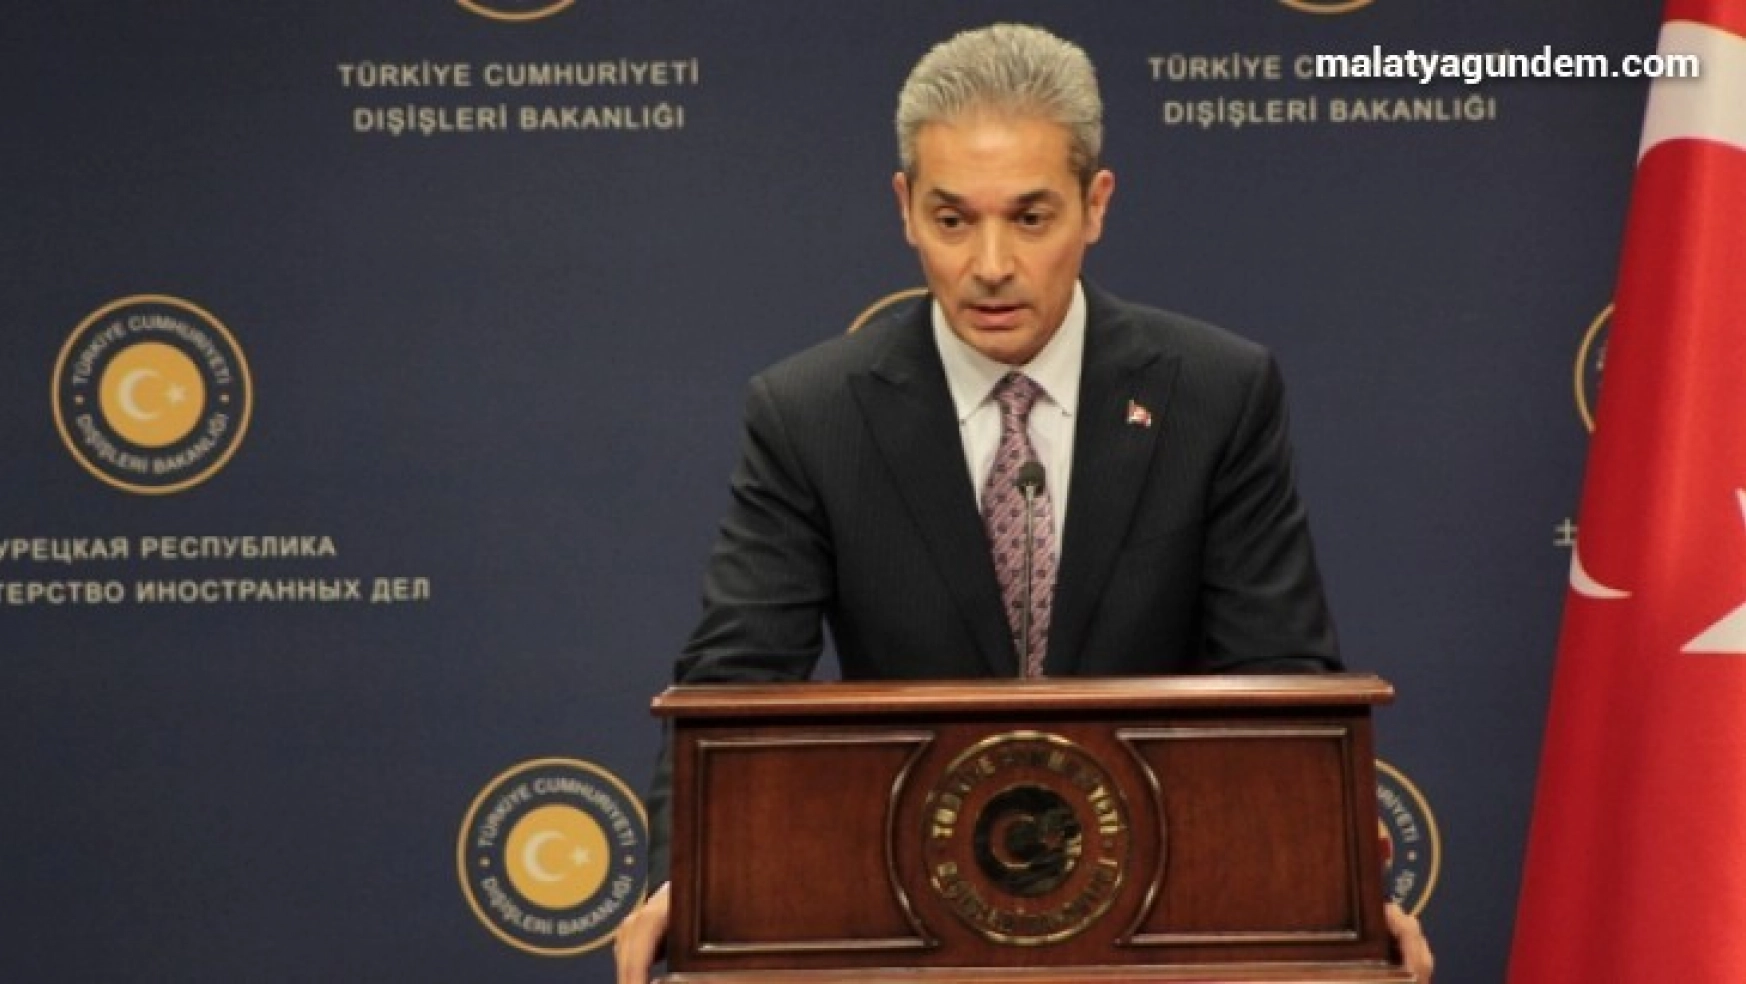 Dışişleri Bakanlığı Sözcüsü Aksoy'dan casusluk açıklaması: 'Suni gündem'